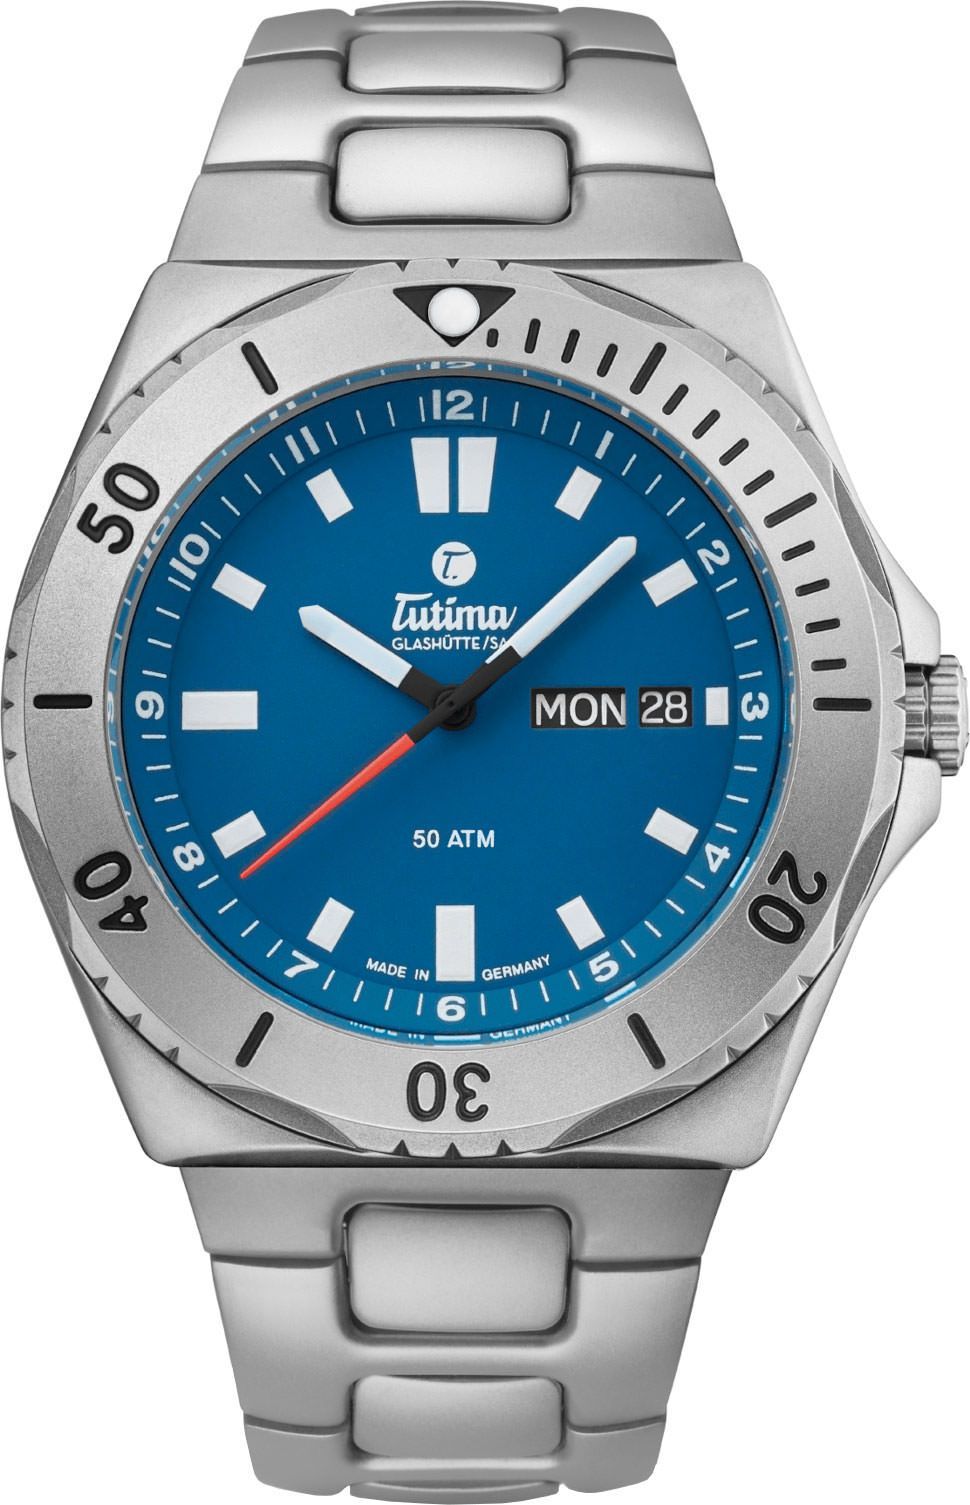 Tutima Glashütte Seven Seas 44 mm Watch in Blue Dial For Men - 1